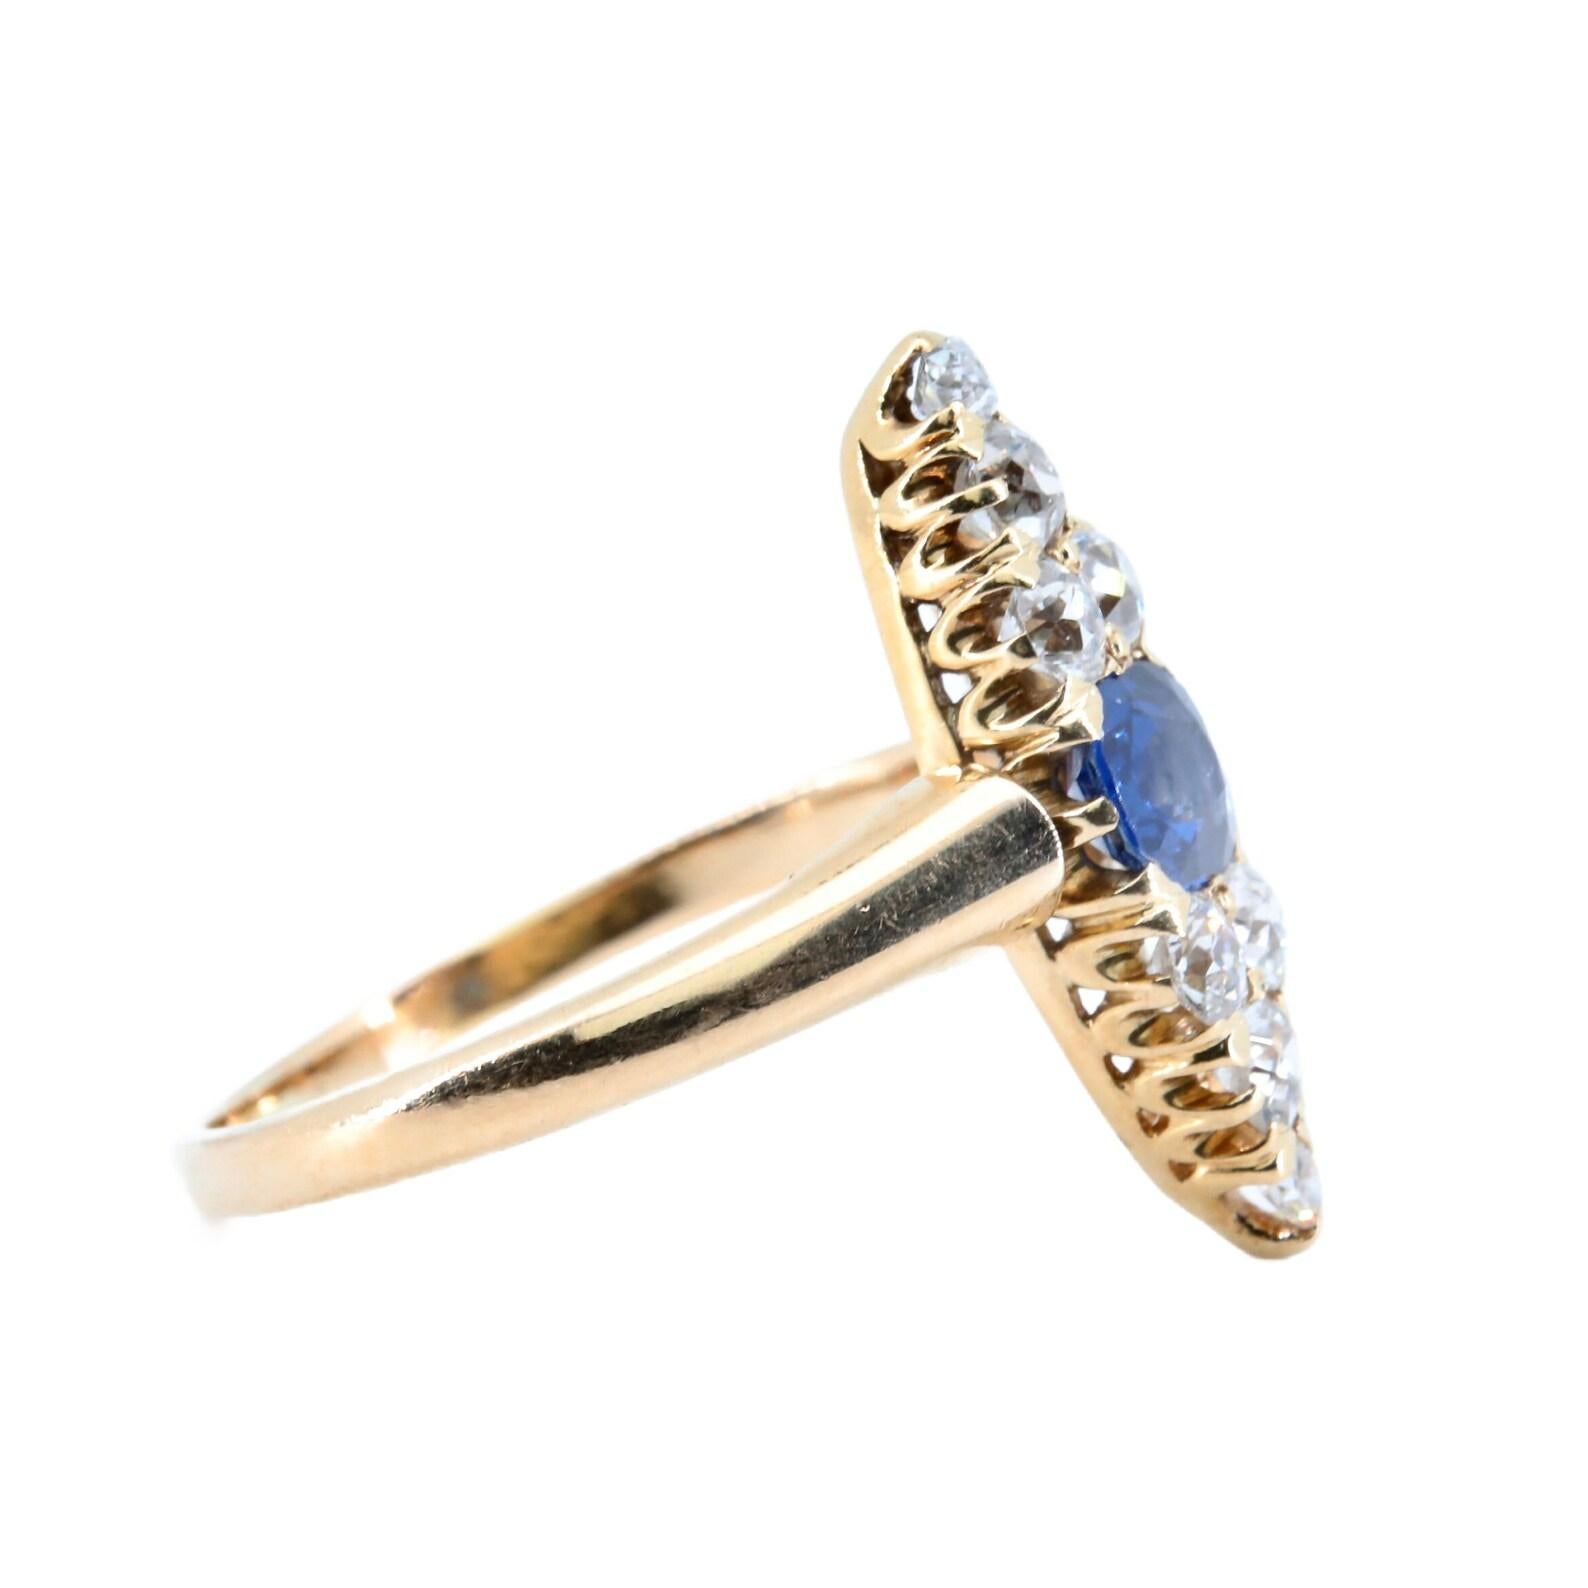 Eine späte viktorianische Periode No Heat Sapphire, und alte Mine geschliffenen Diamanten Ring.

Dieser Ring in traditioneller Navette-Form wird von einem natürlichen blauen Saphir von 0,80 Karat mit GIA-Zertifikat (No Heat) eingefasst.

Der Saphir